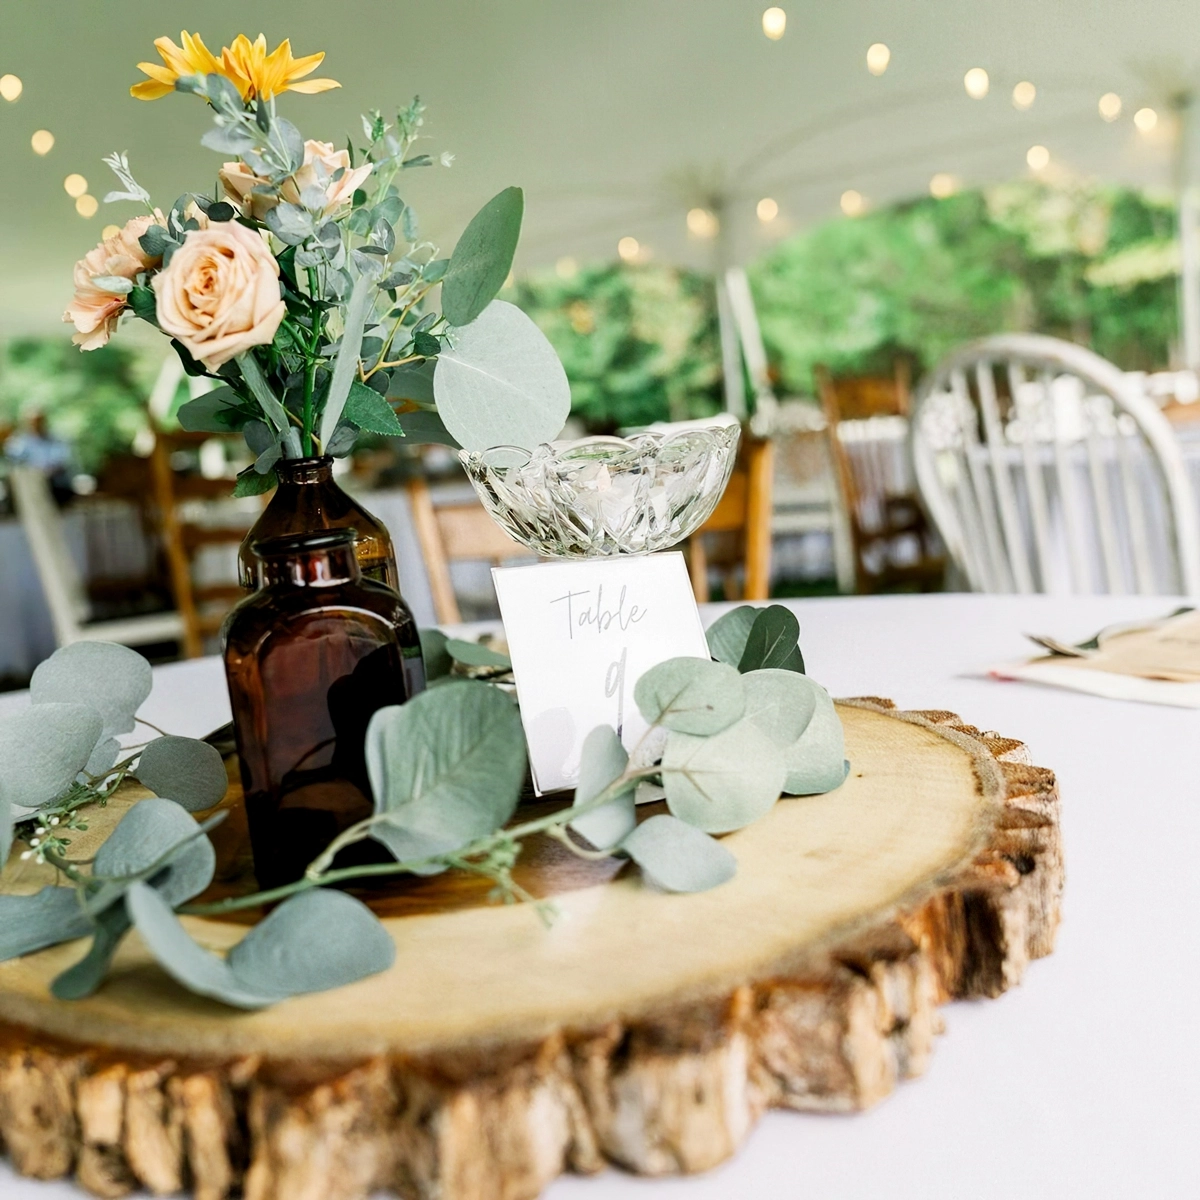 tischdeko mit holz und blumen holzscheibe dekoriert mit eukalyptus und vase mit blumen bellespleasure